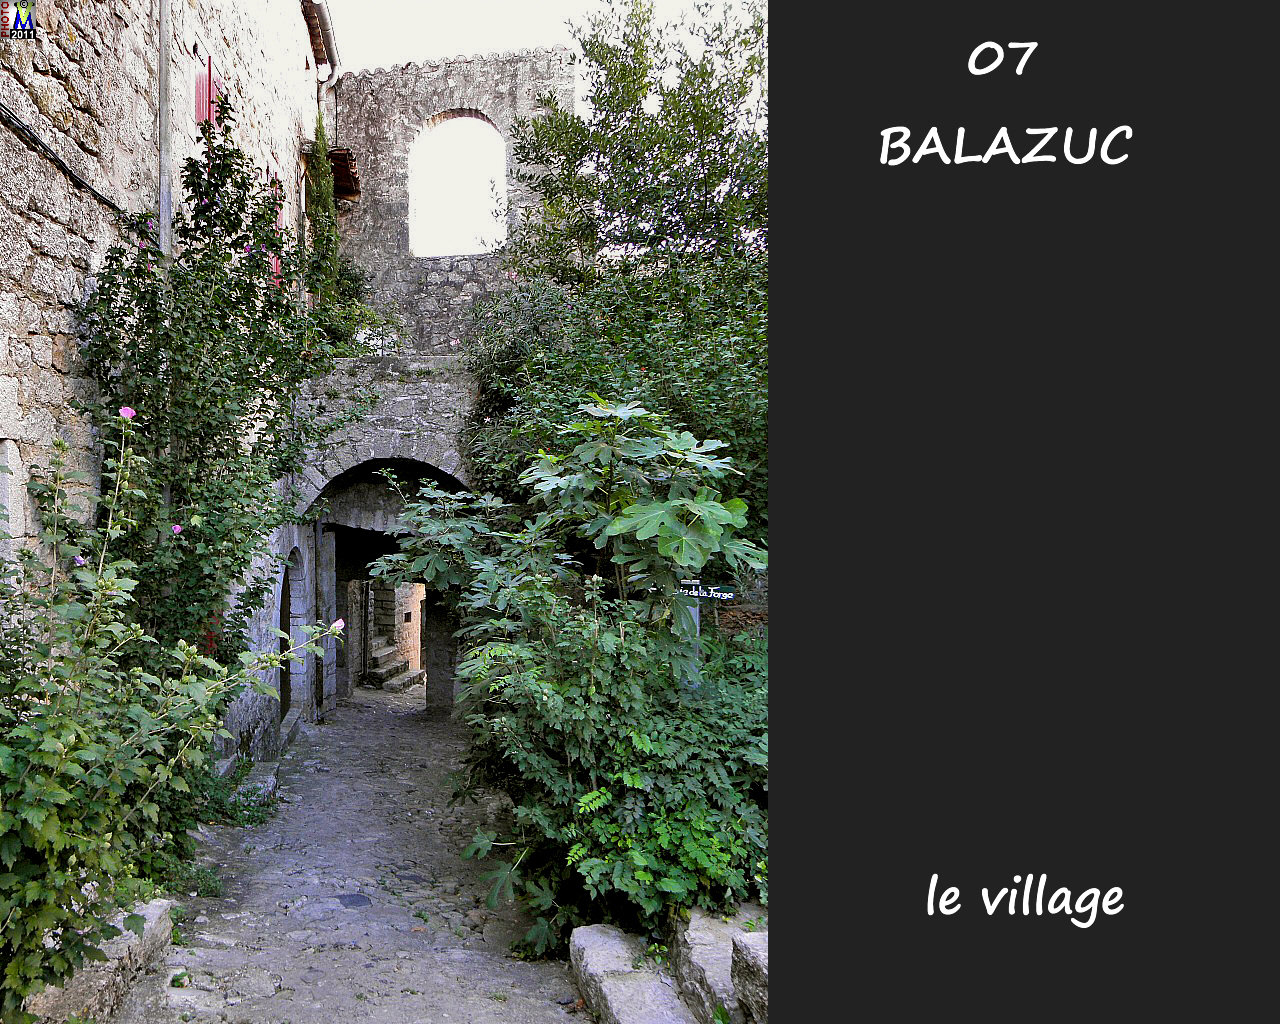 07BALAZUC_village_186.jpg